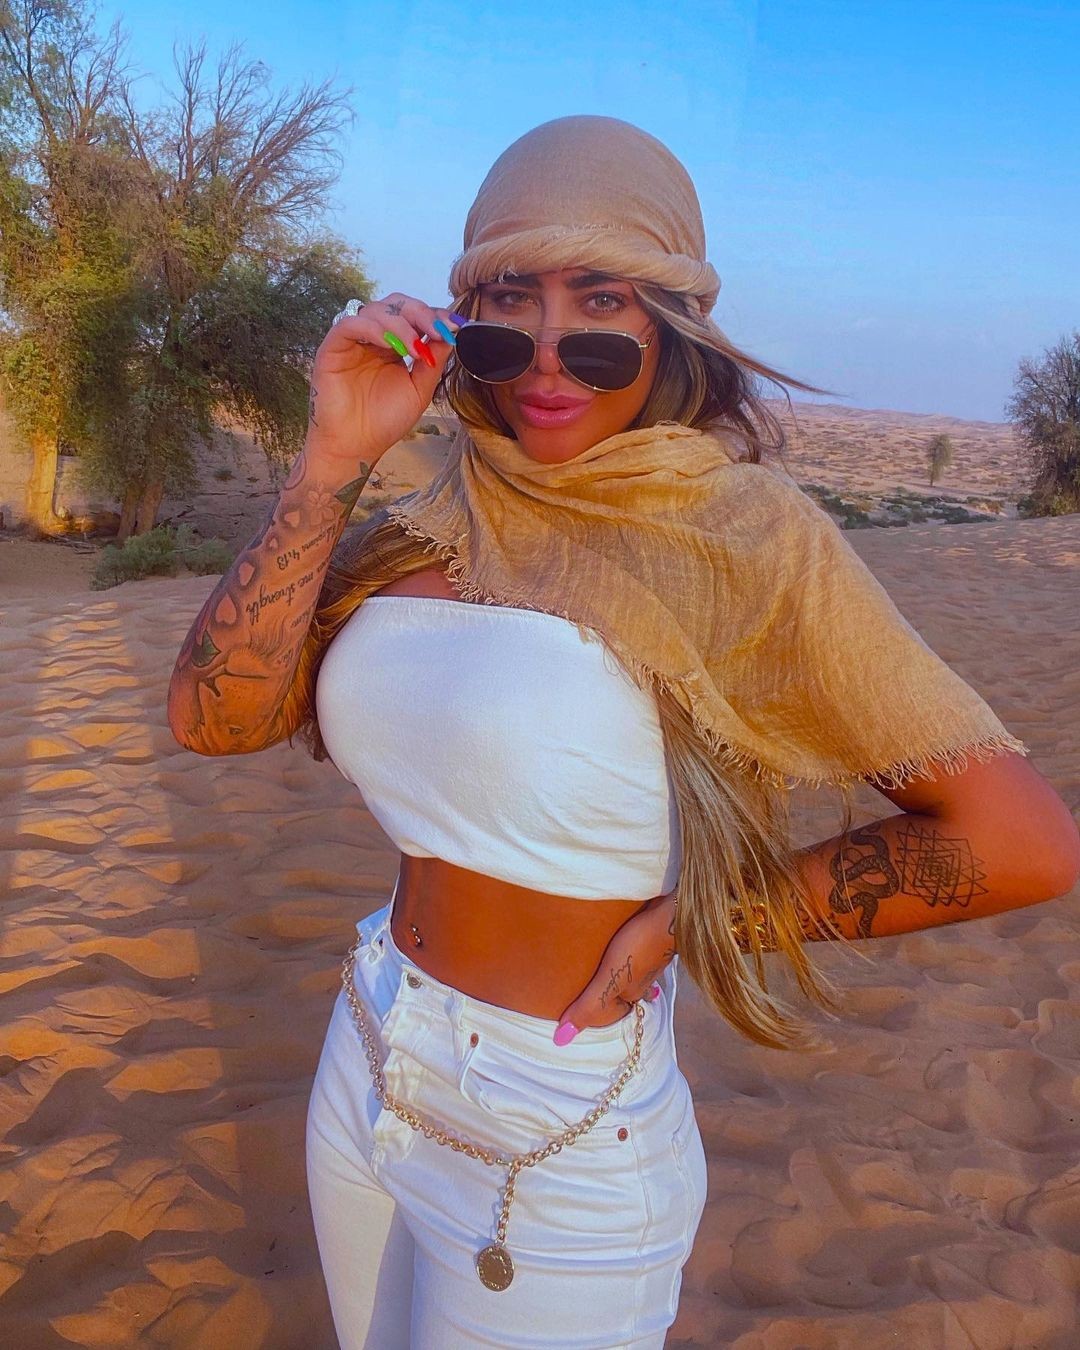 Em Dubai, Rafaella posa no deserto e recebe elogios na internet (Foto: Reprodução/Instagram)